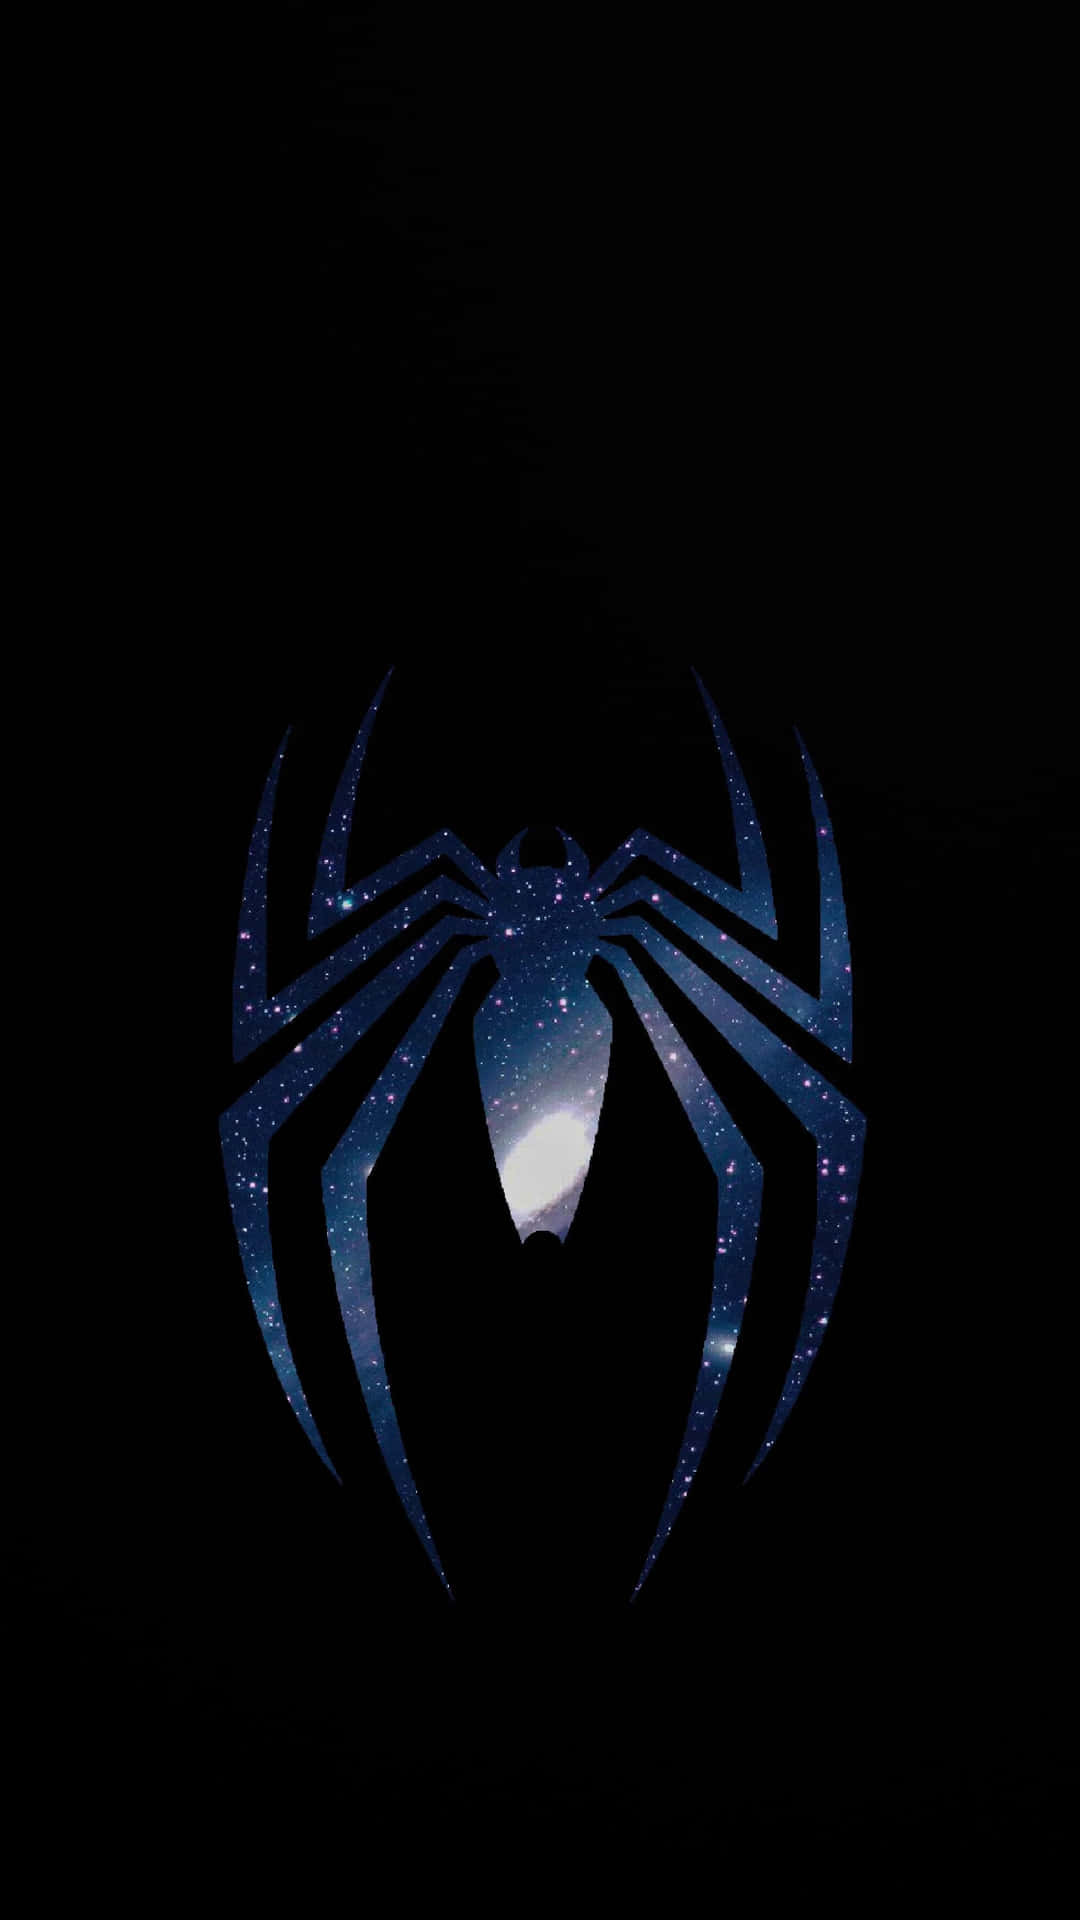 Spiderman-logo Auf Schwarzem Hintergrund.